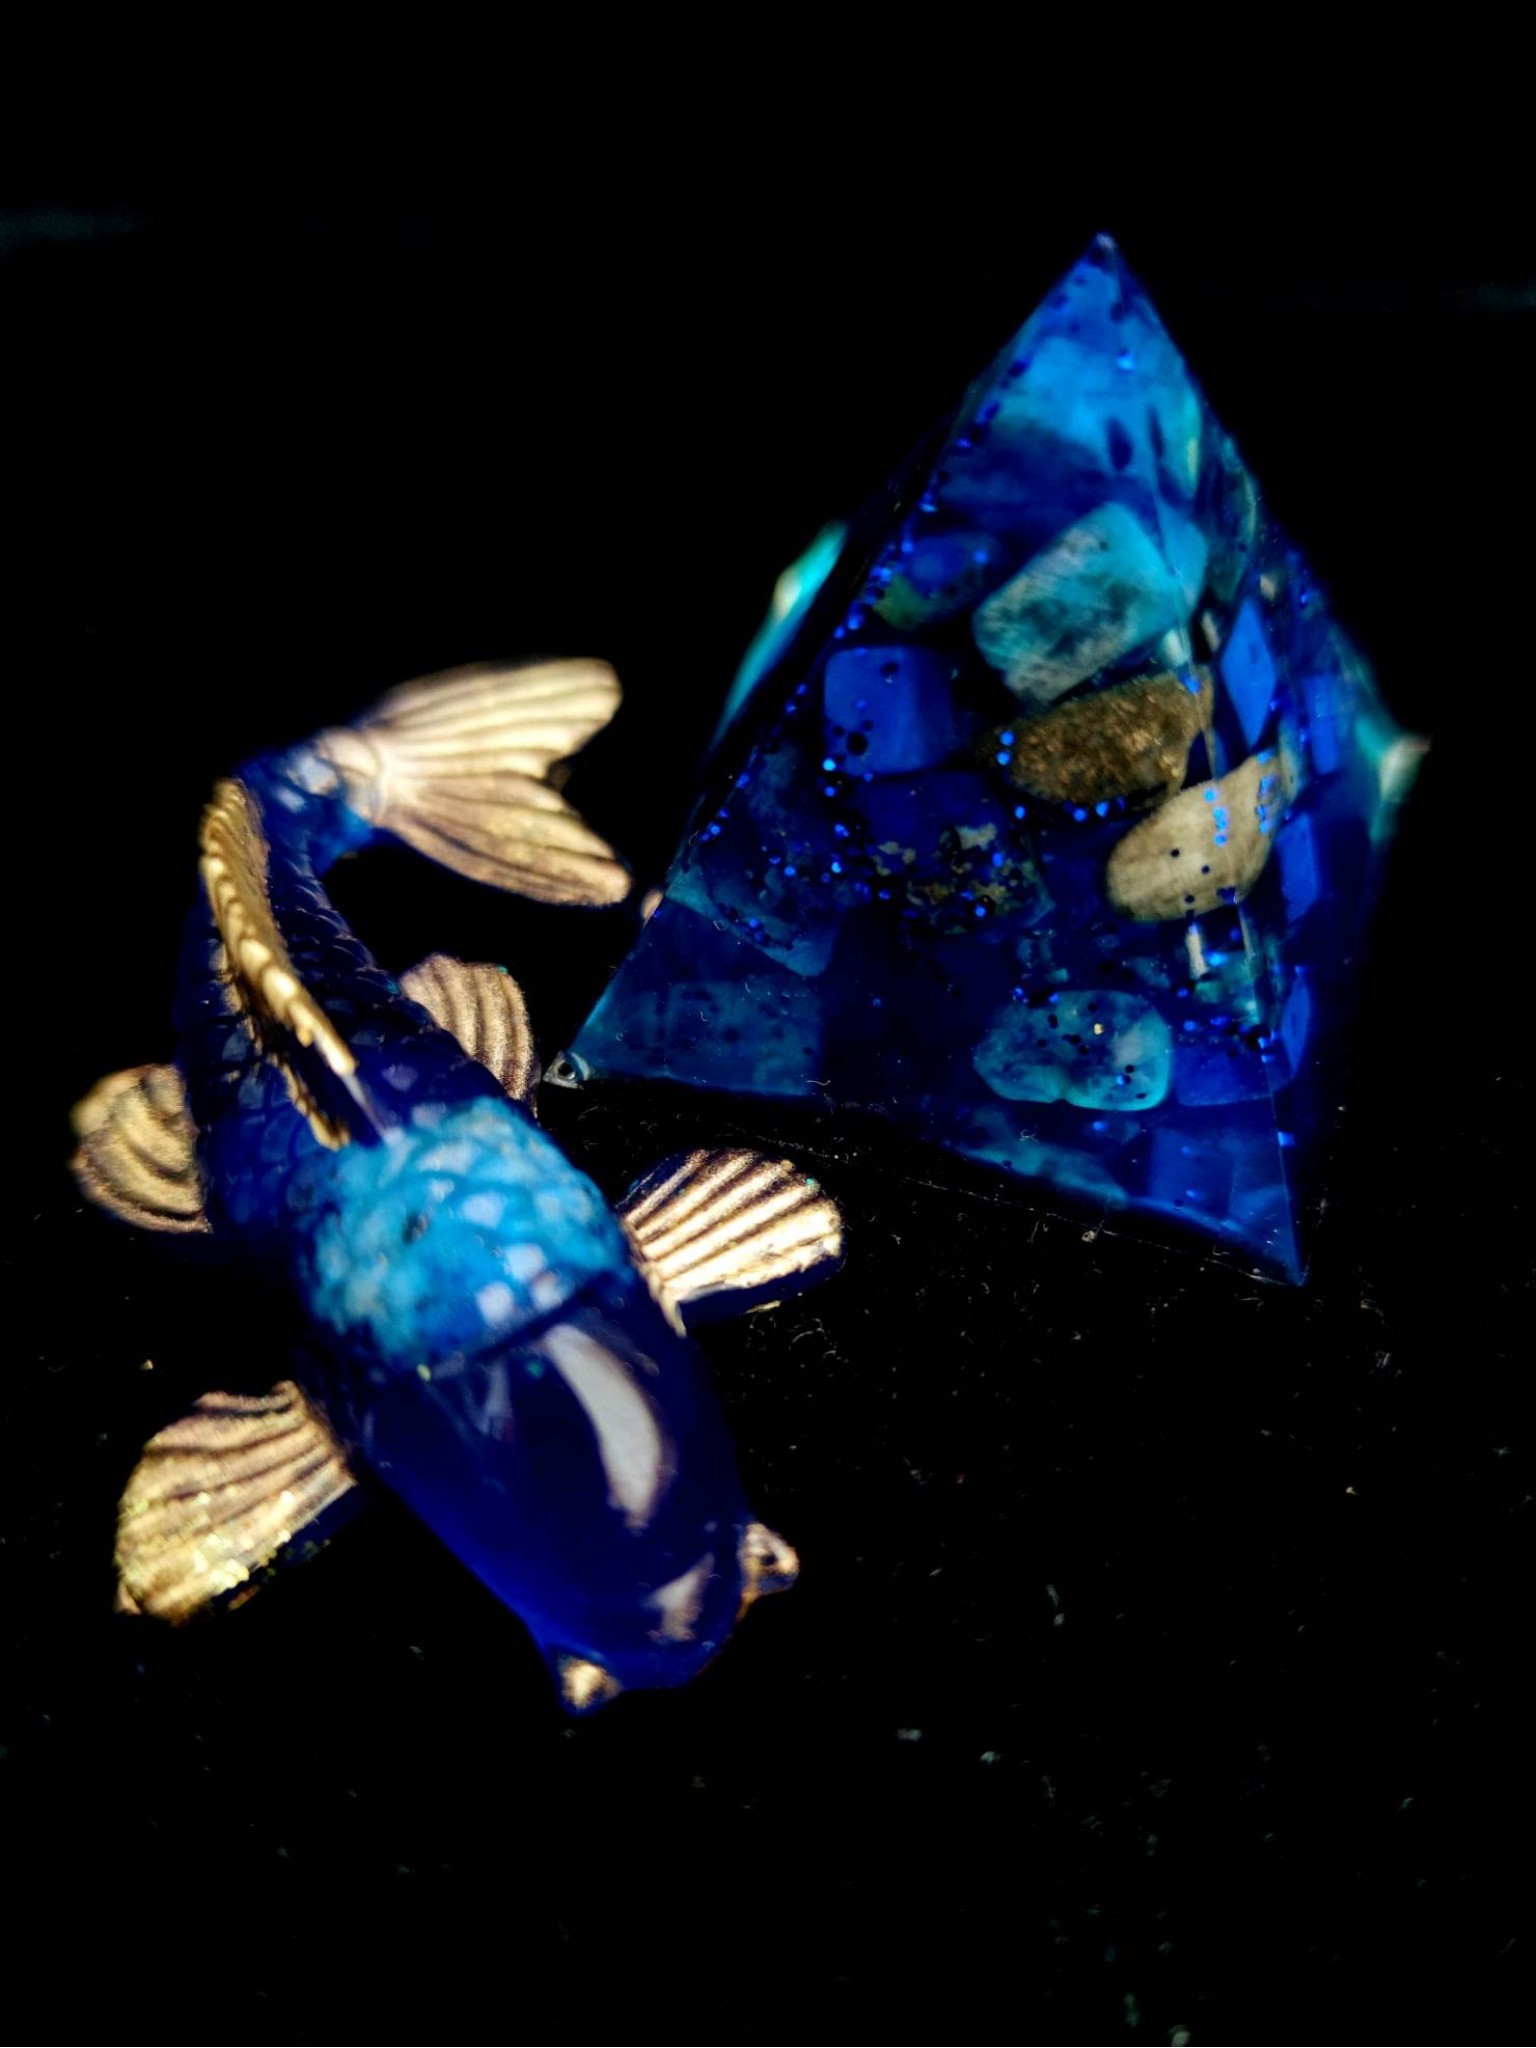 Orgonite-lahjasetti uuteen kotiin harmonian ja onnen houkuttelemiseksi - feng shui Koi kala ja orgone-pyramidi Lapis lazulilla